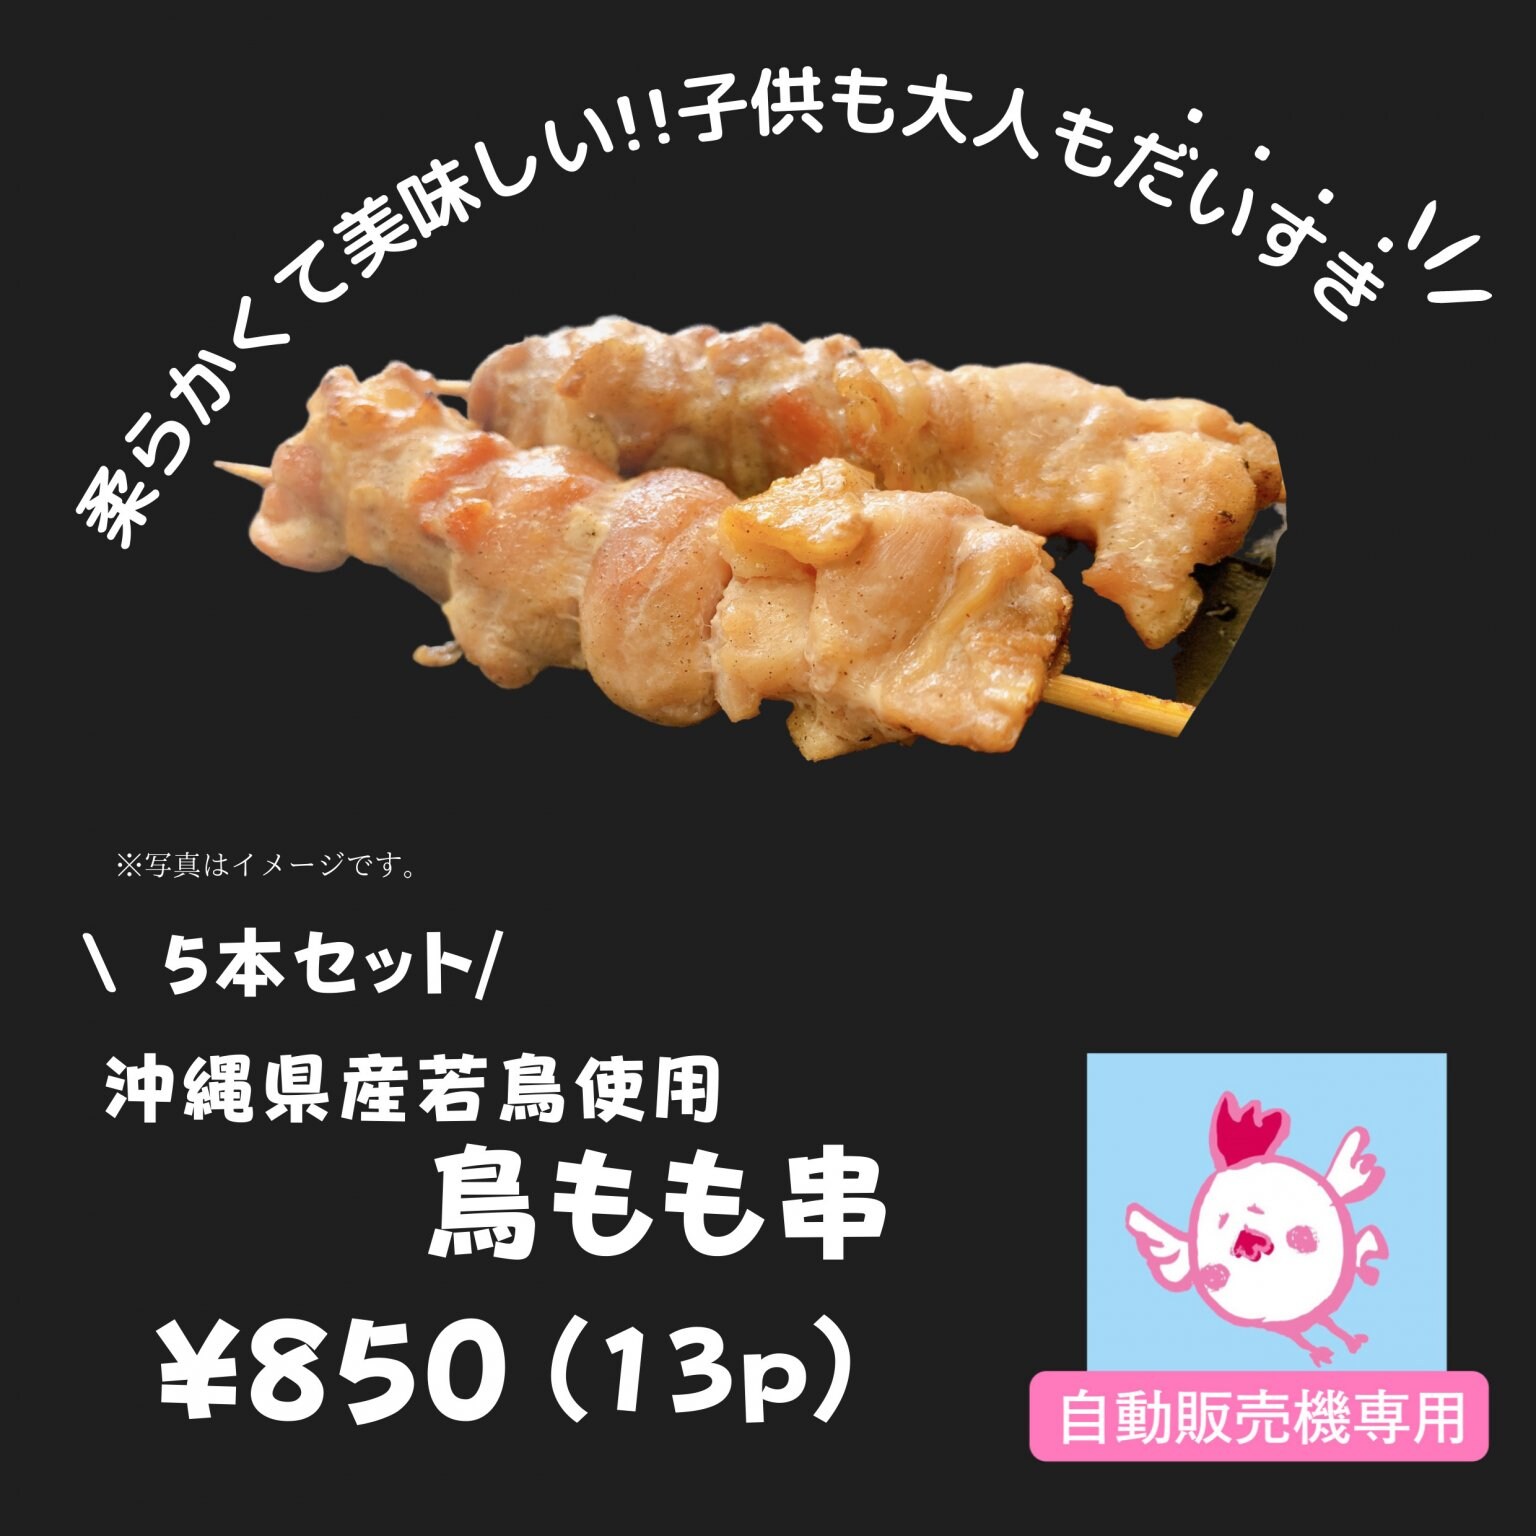 【冷凍自動販売機専用】沖縄産若鶏もも串(5本セット)